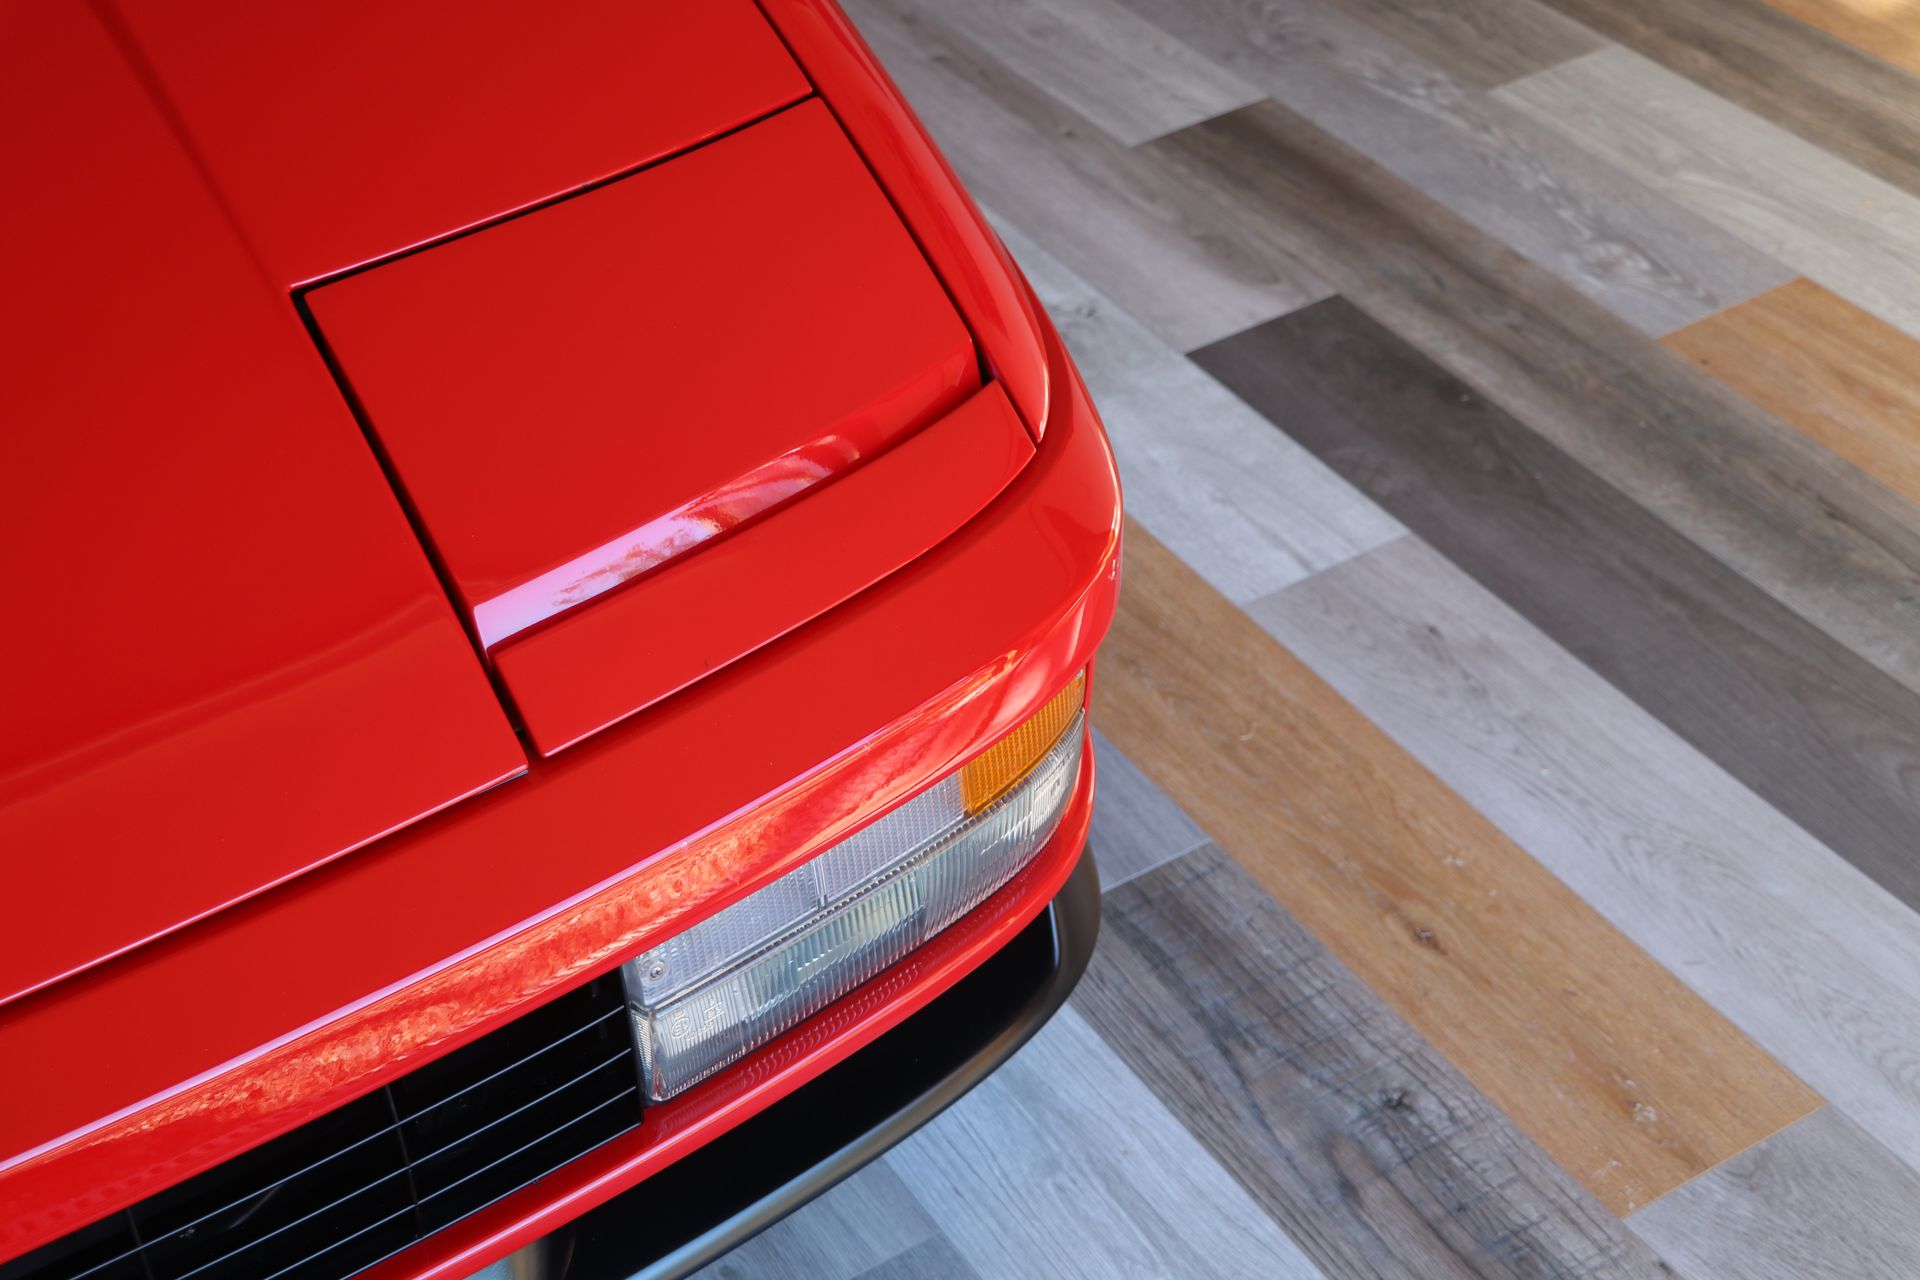 Red Ferrari in storage with laminate flooring